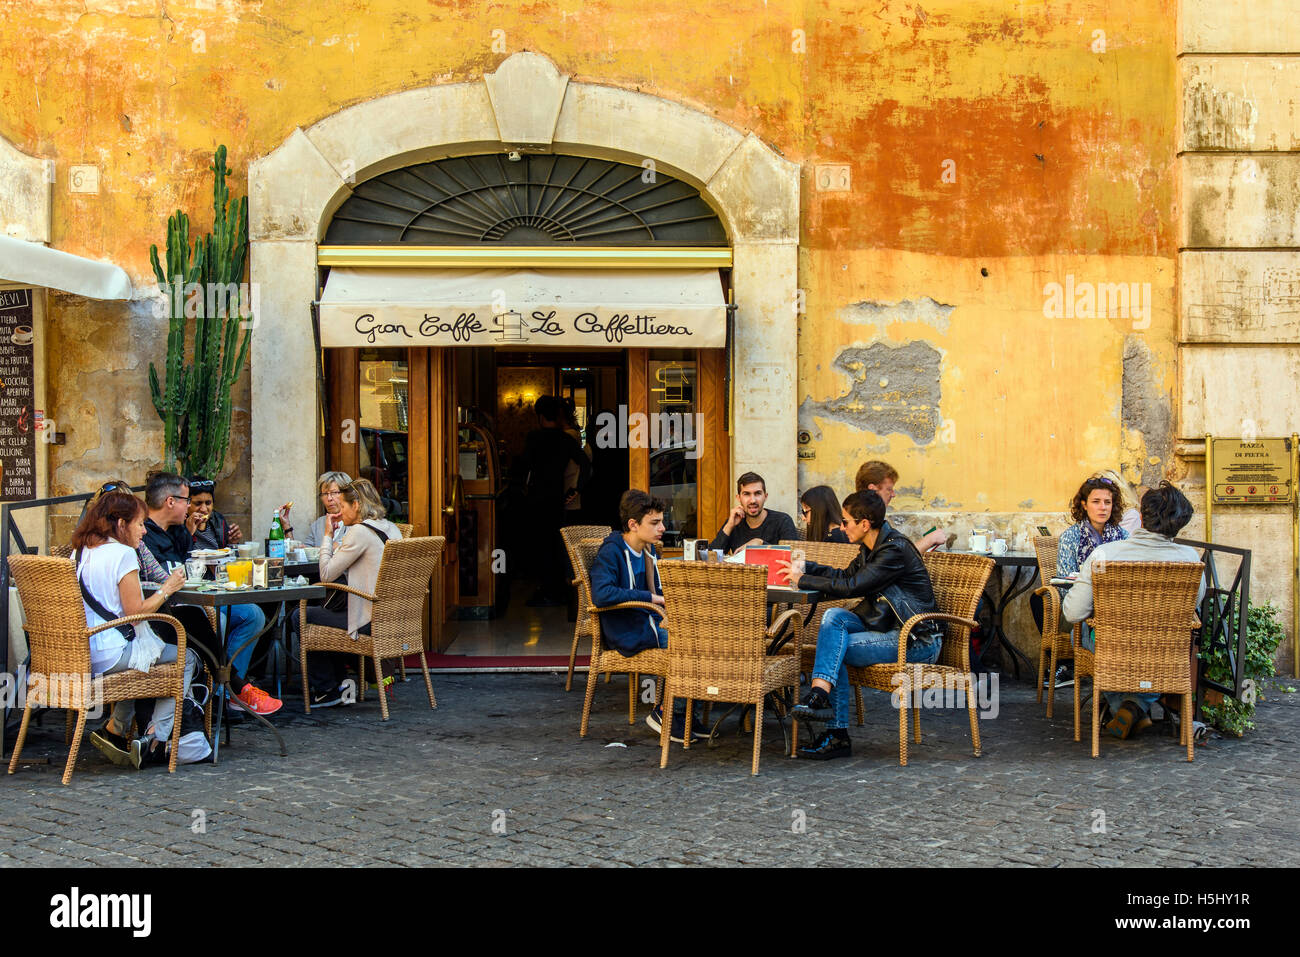 Les touristes manger dehors dans un restaurant pizzeria de Rome, Latium, Italie Banque D'Images